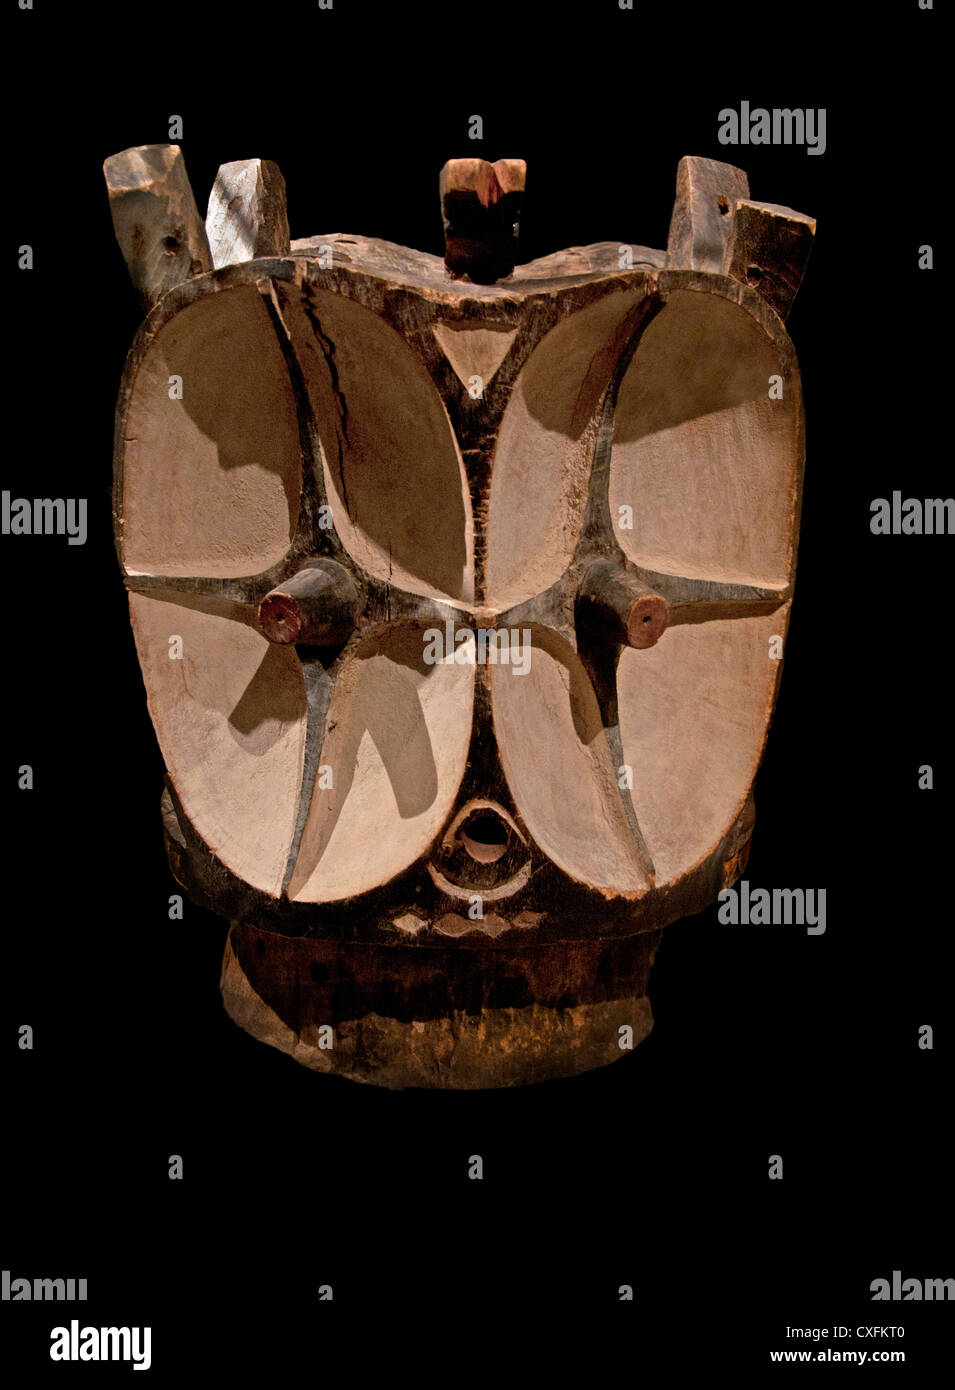 Masque heaume Janus 19e siècle République démocratique du Congo Bembe peinture bois autochtones de l'Afrique de l'argile 47 cm Banque D'Images